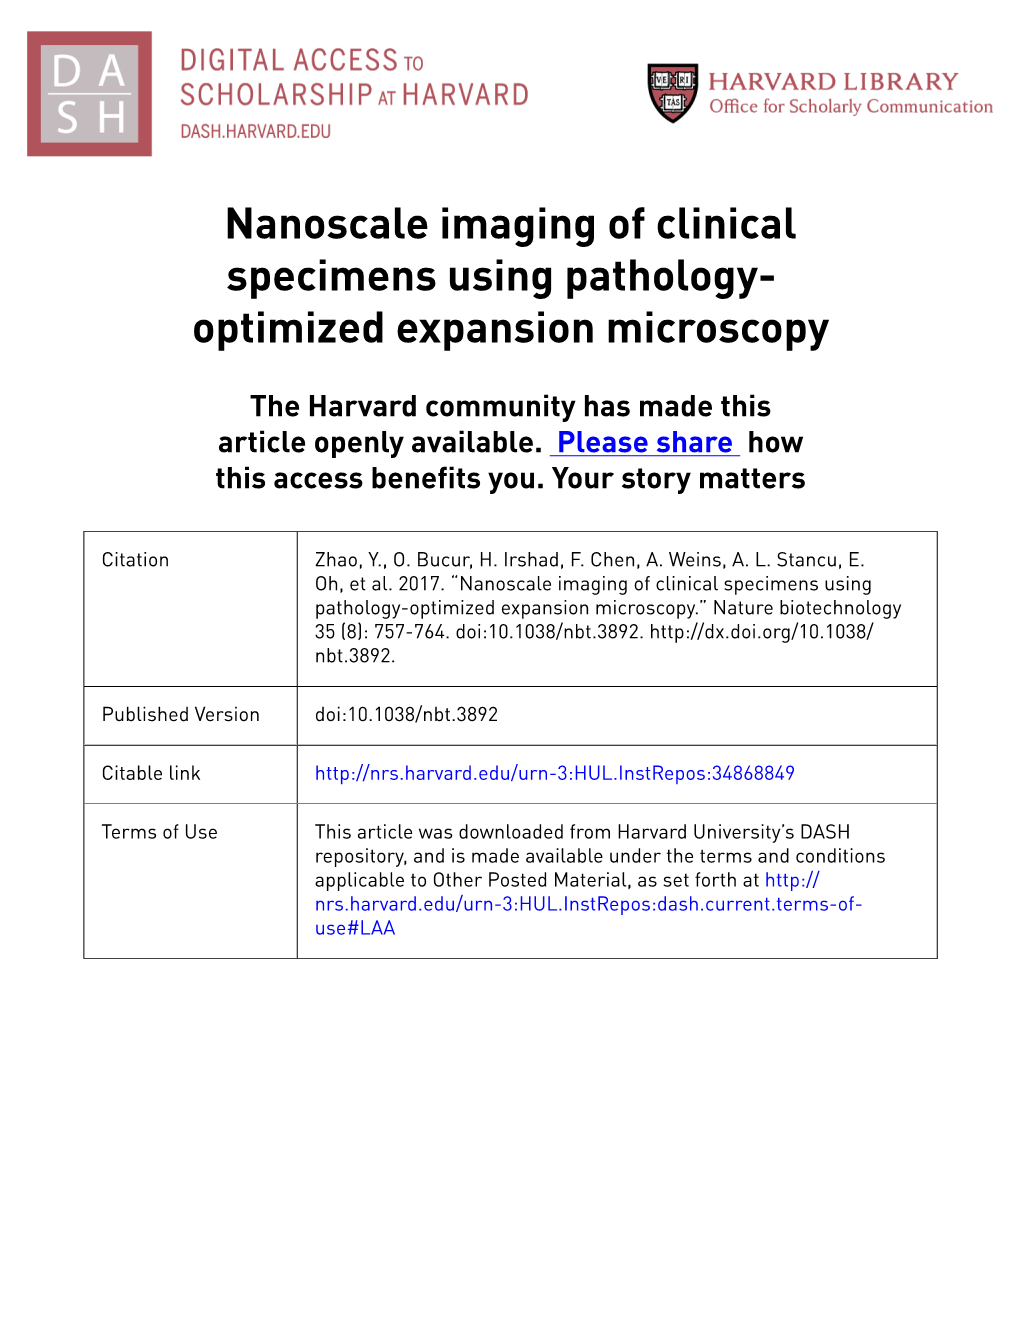 Nanoscale Imaging of Clinical Specimens Using Pathology- Optimized Expansion Microscopy